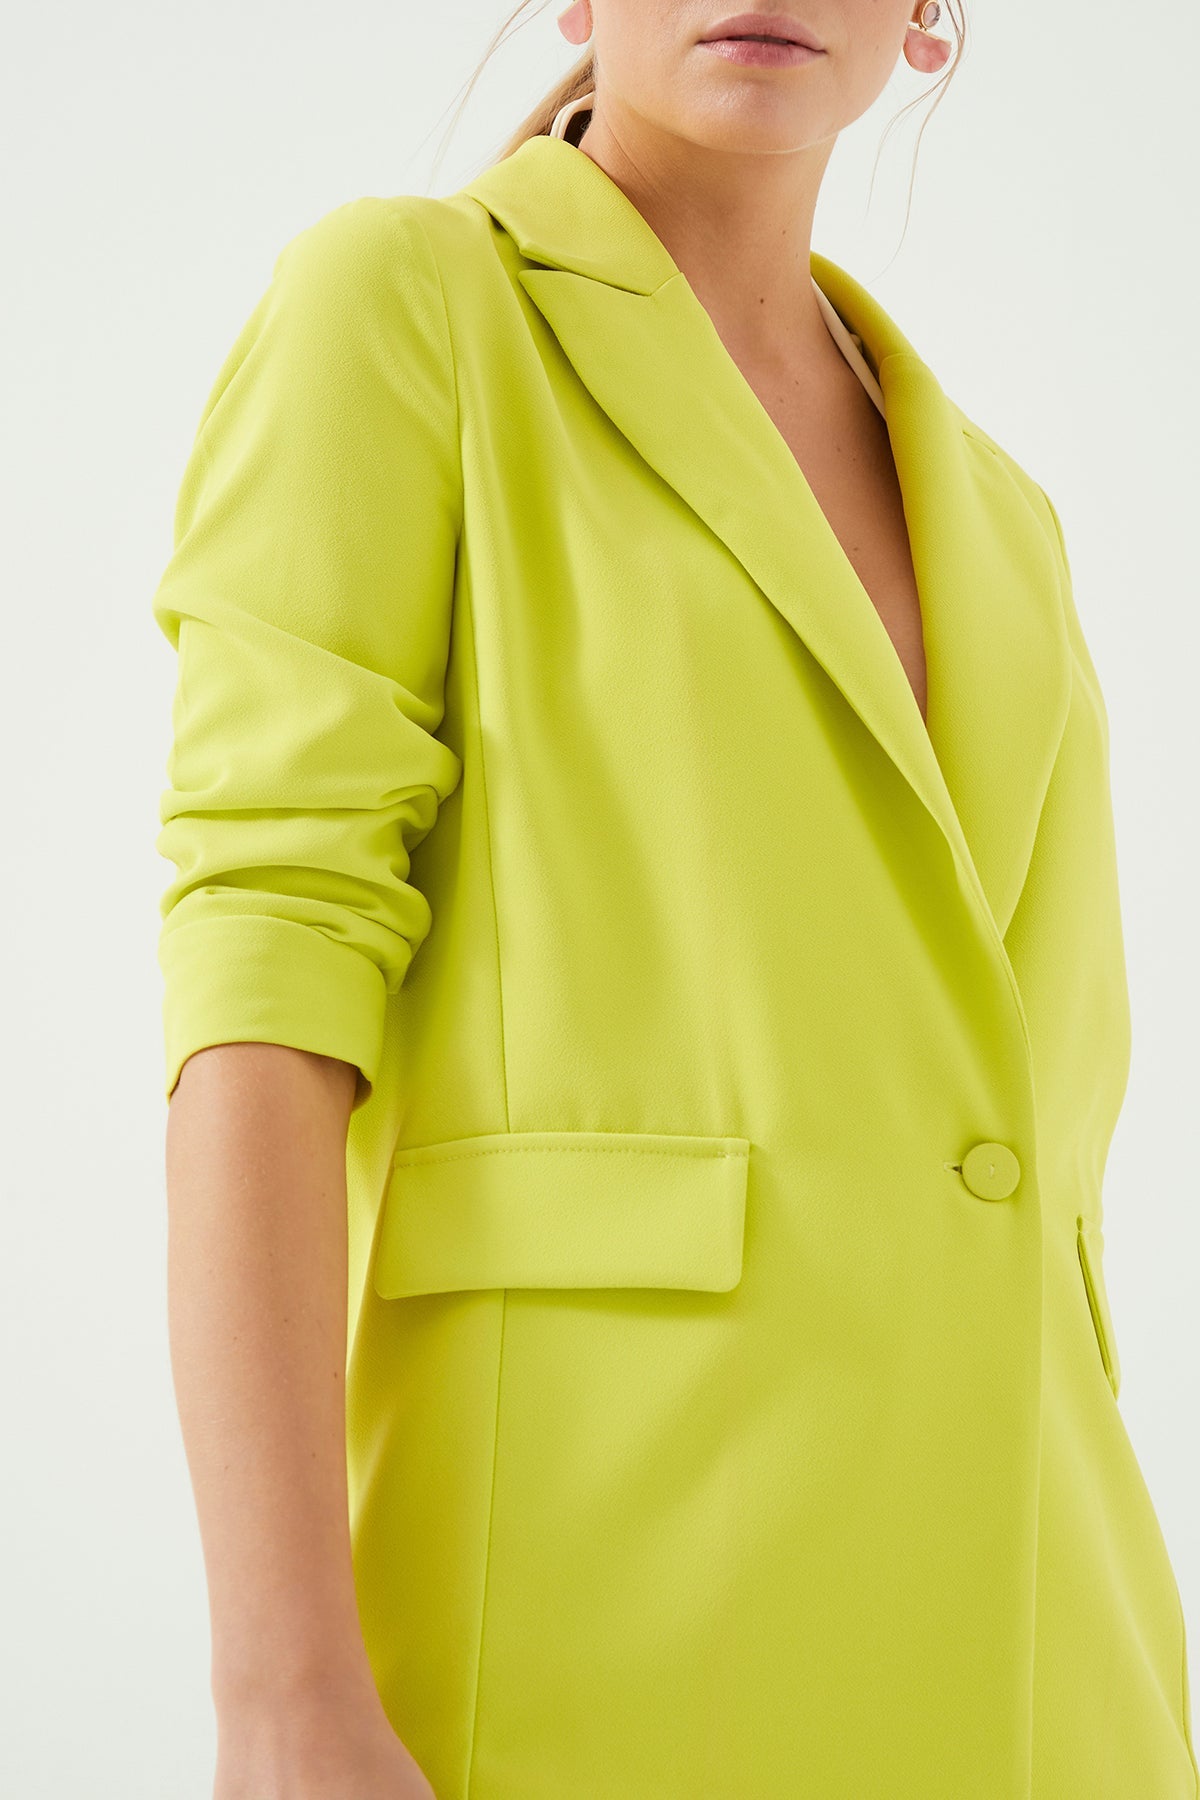 Açık Yeşil Kolları Büzgülü Astarsız Blazer Kadın Ceket